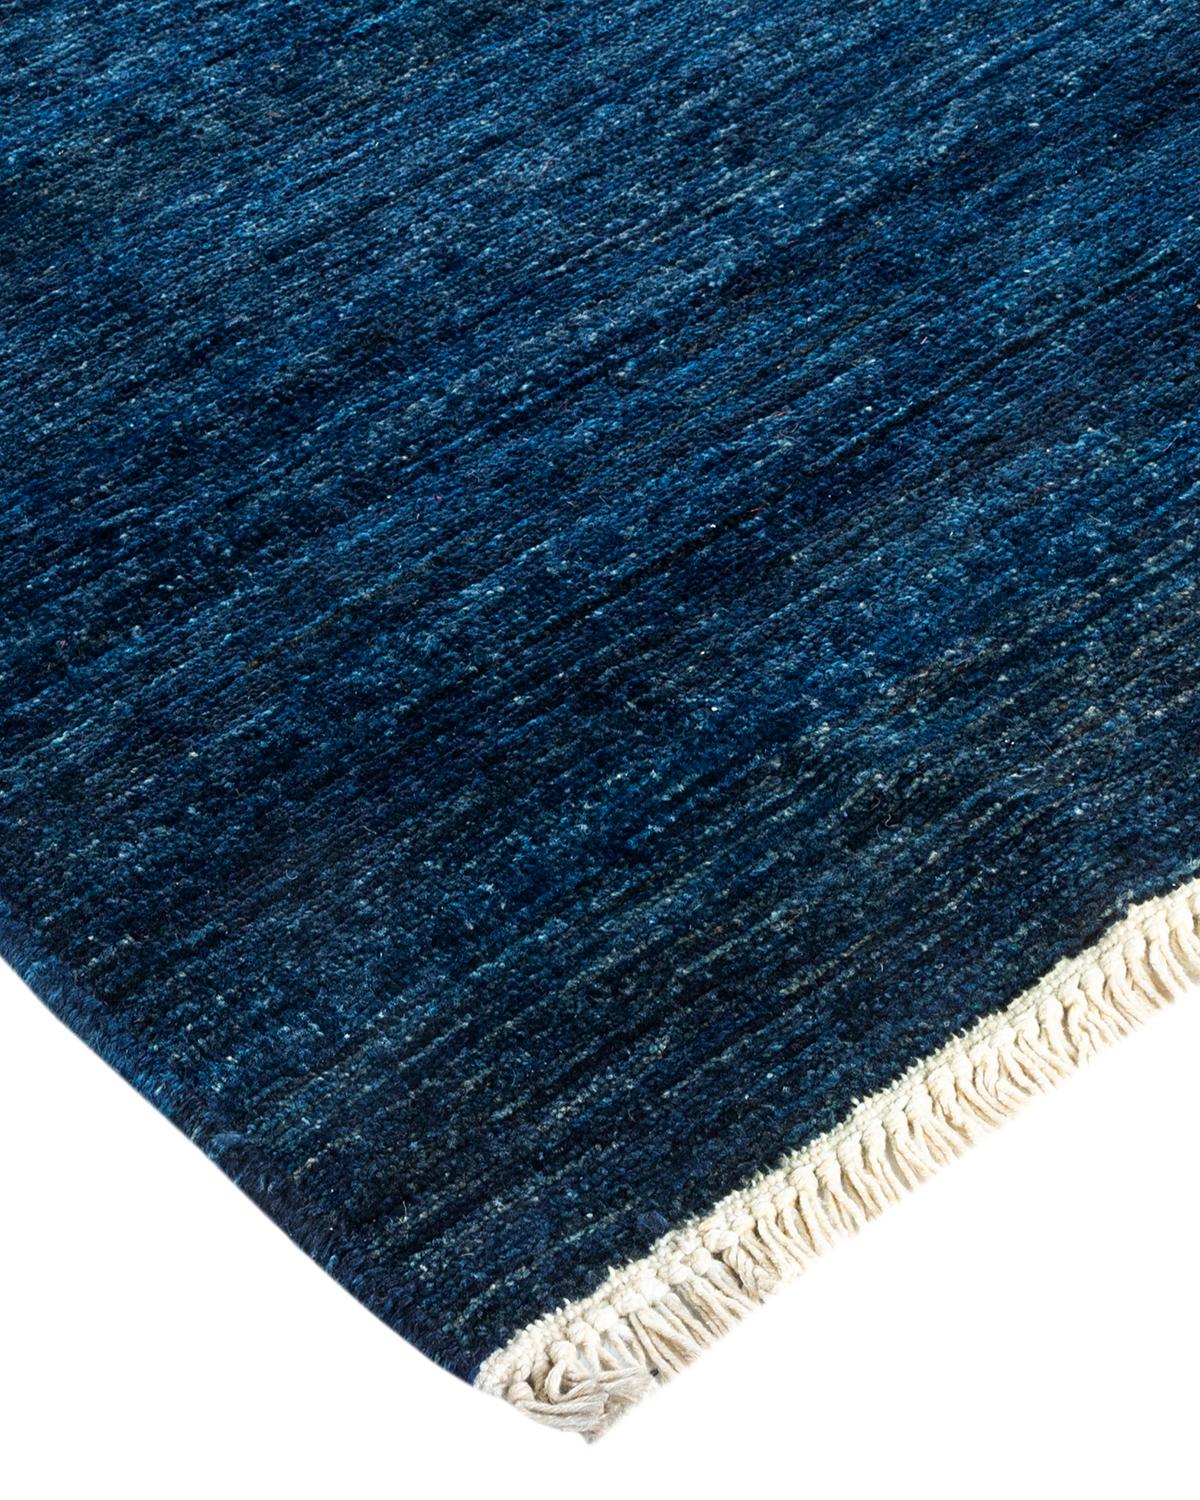 Die Teppiche der Mogul Collection'S bringen mit ihren zurückhaltenden Farben und Allover-Mustern zeitlose Raffinesse in jeden Raum. Beeinflusst von einem Spektrum türkischer, indischer und persischer Designs, lassen die Kunsthandwerker, die diese